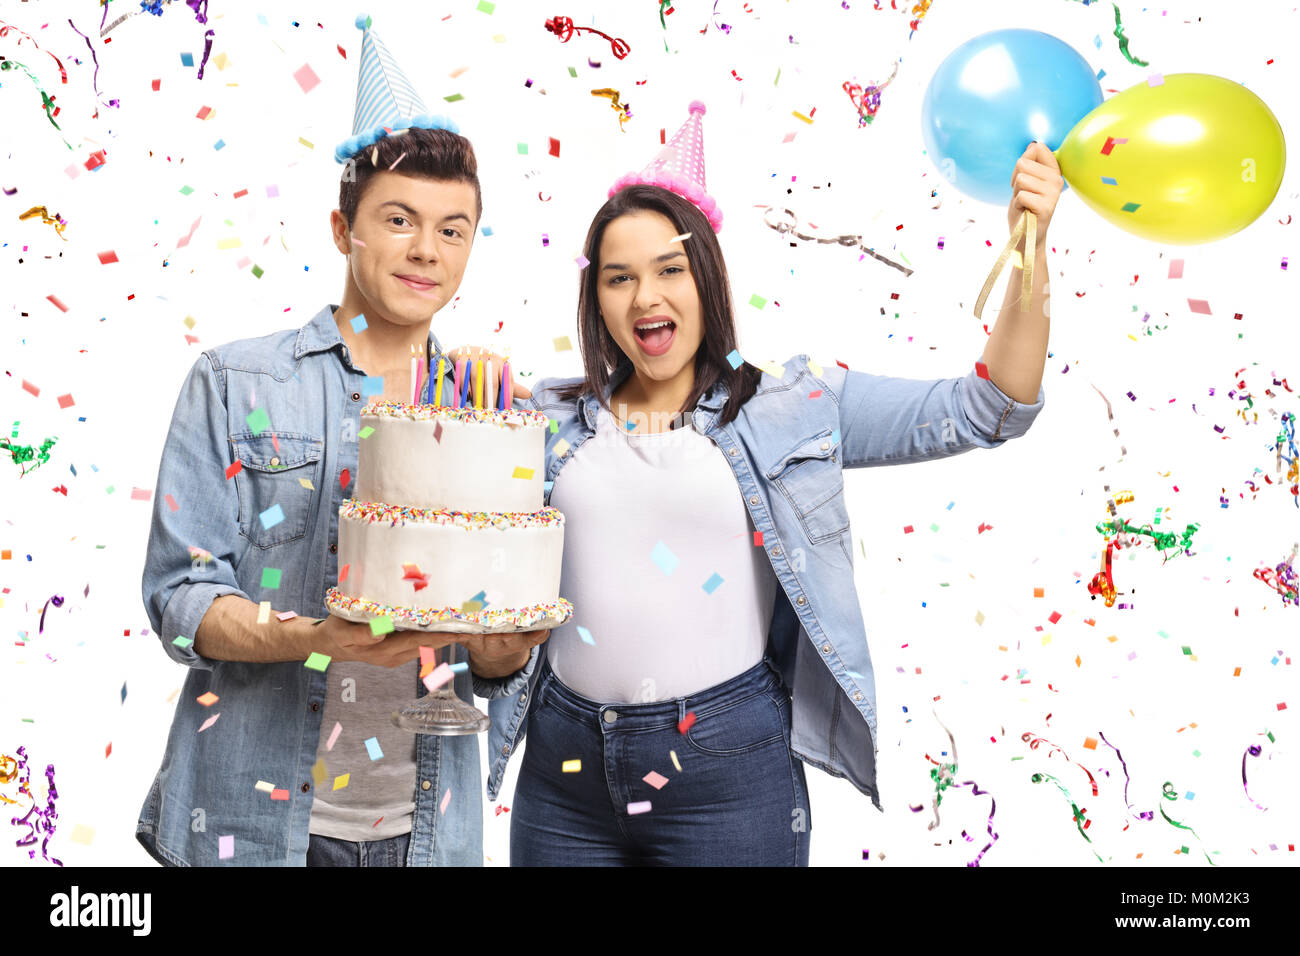 Gli adolescenti in possesso di una torta di compleanno e palloncini con i confetti streamers battenti intorno a loro isolati su sfondo bianco Foto Stock